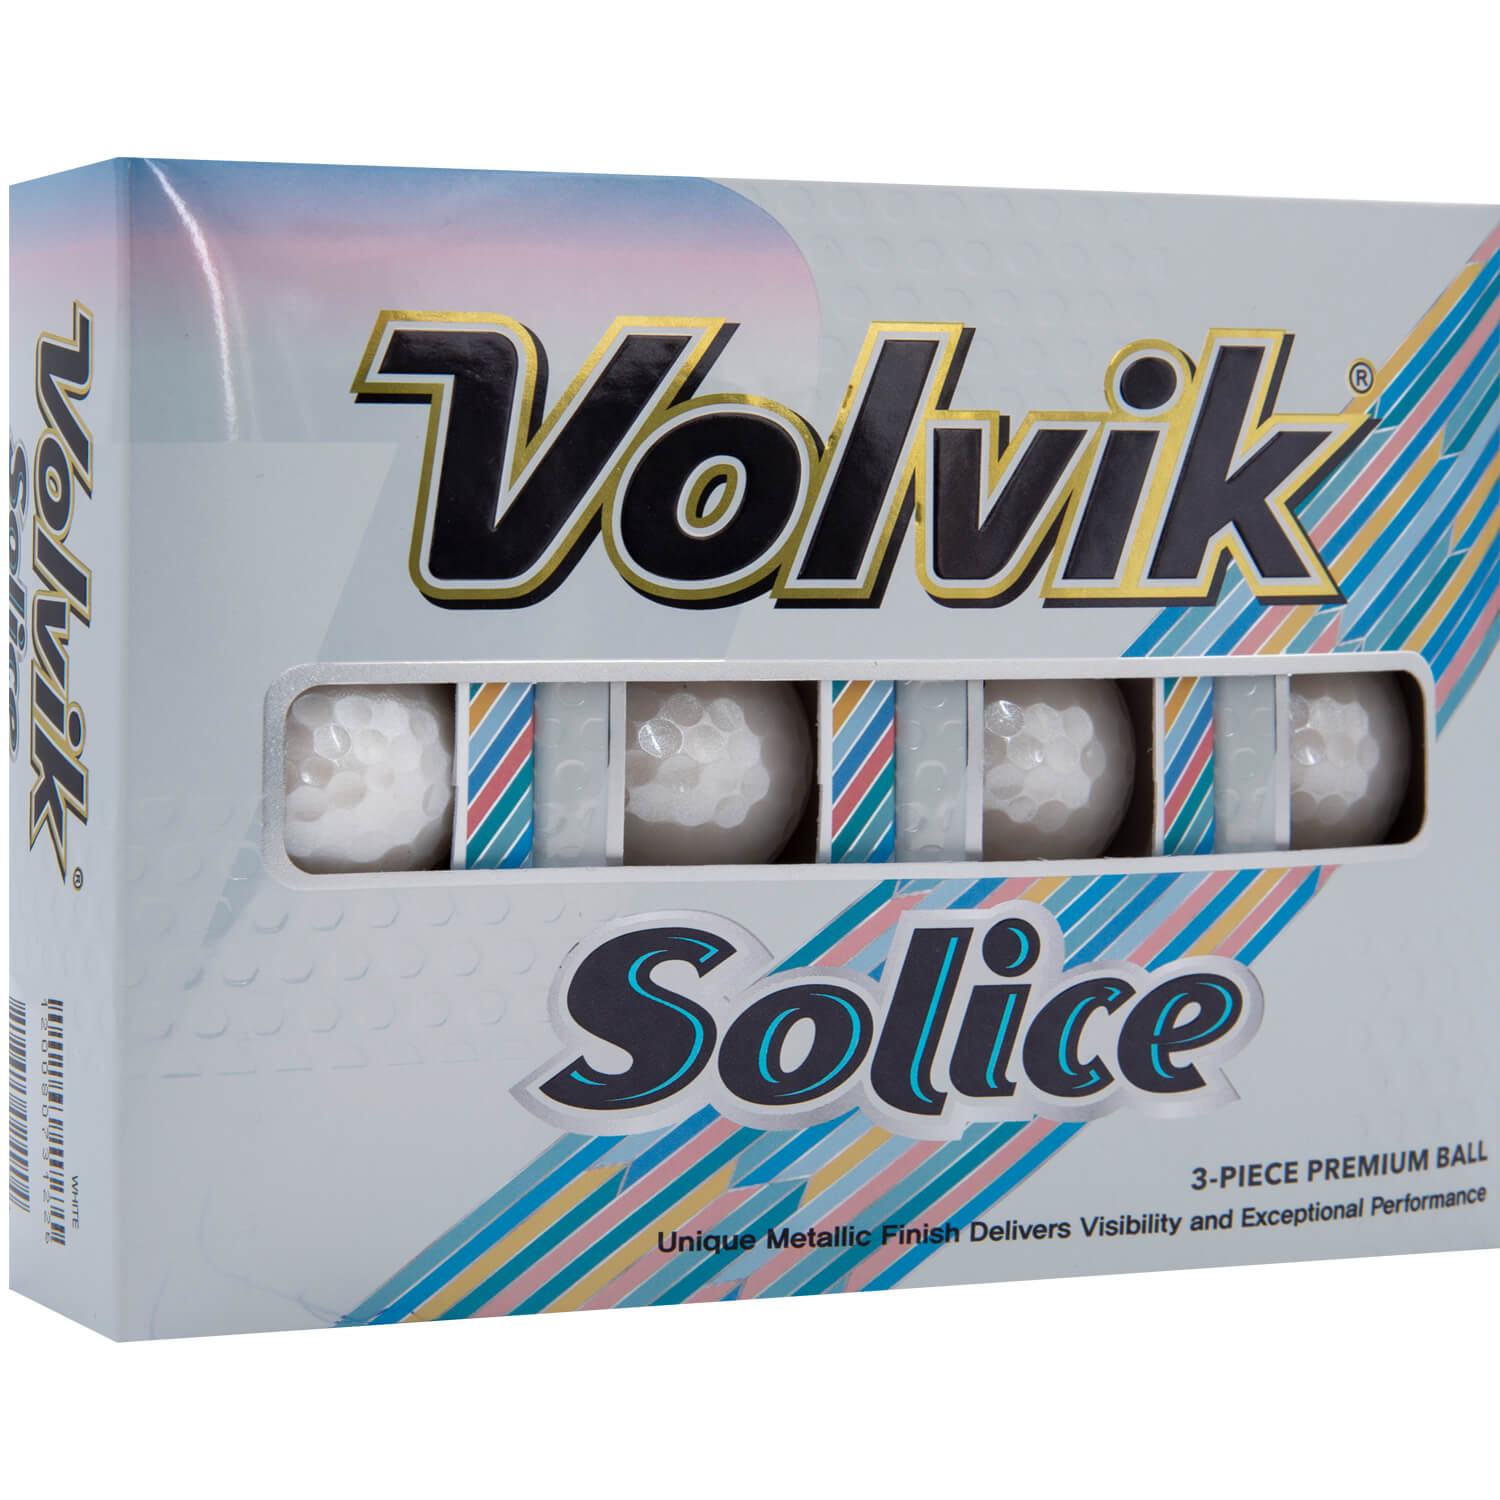 Volvik Solice Metallic Finish white